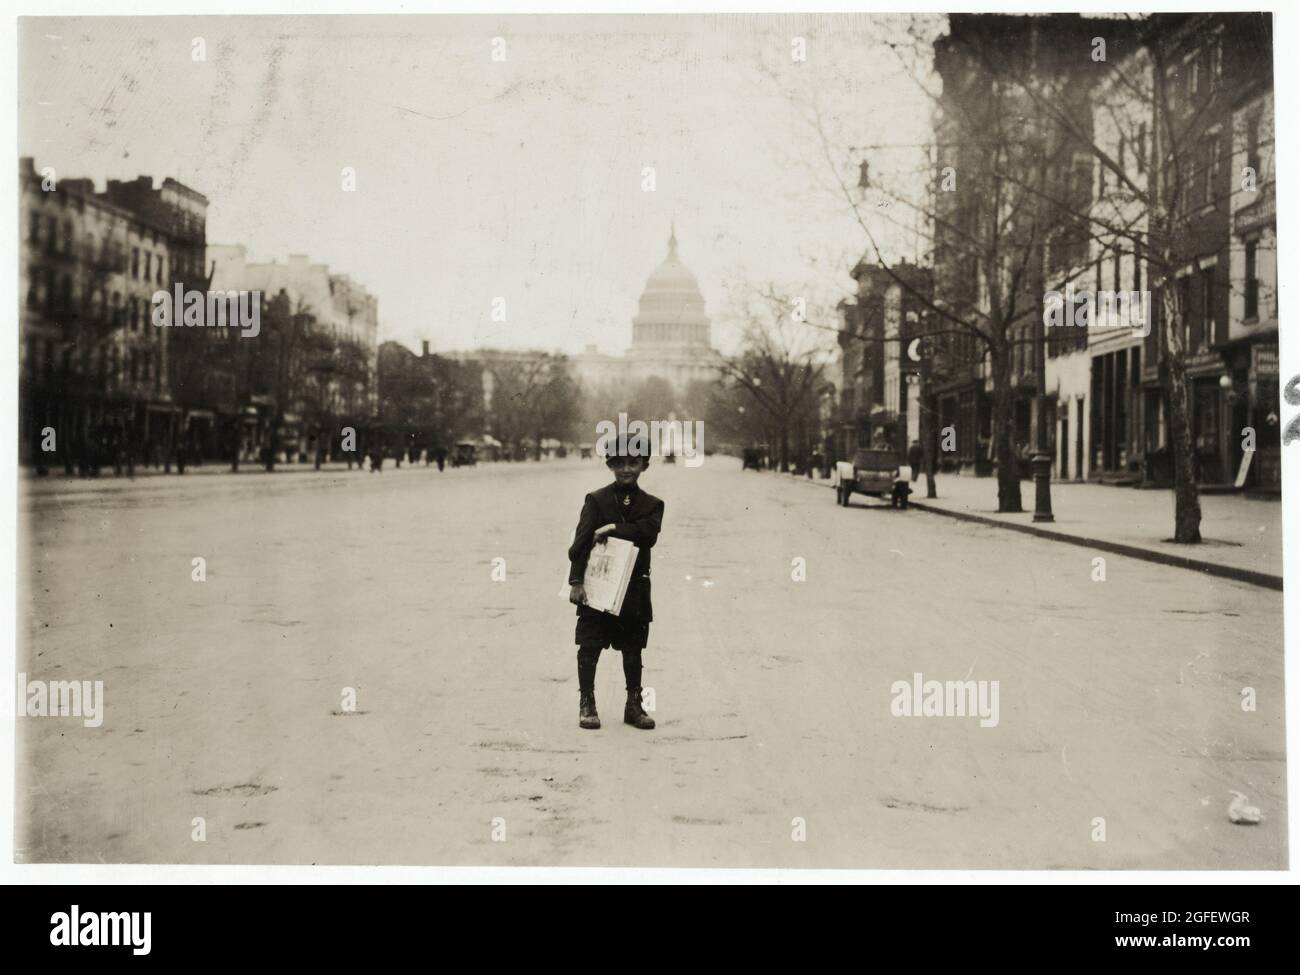 Dimanche. 7 y. Old News-boy – 1912 avril – photo de Lewis Hine. Capitole des États-Unis en arrière-plan / Washington DC. Banque D'Images